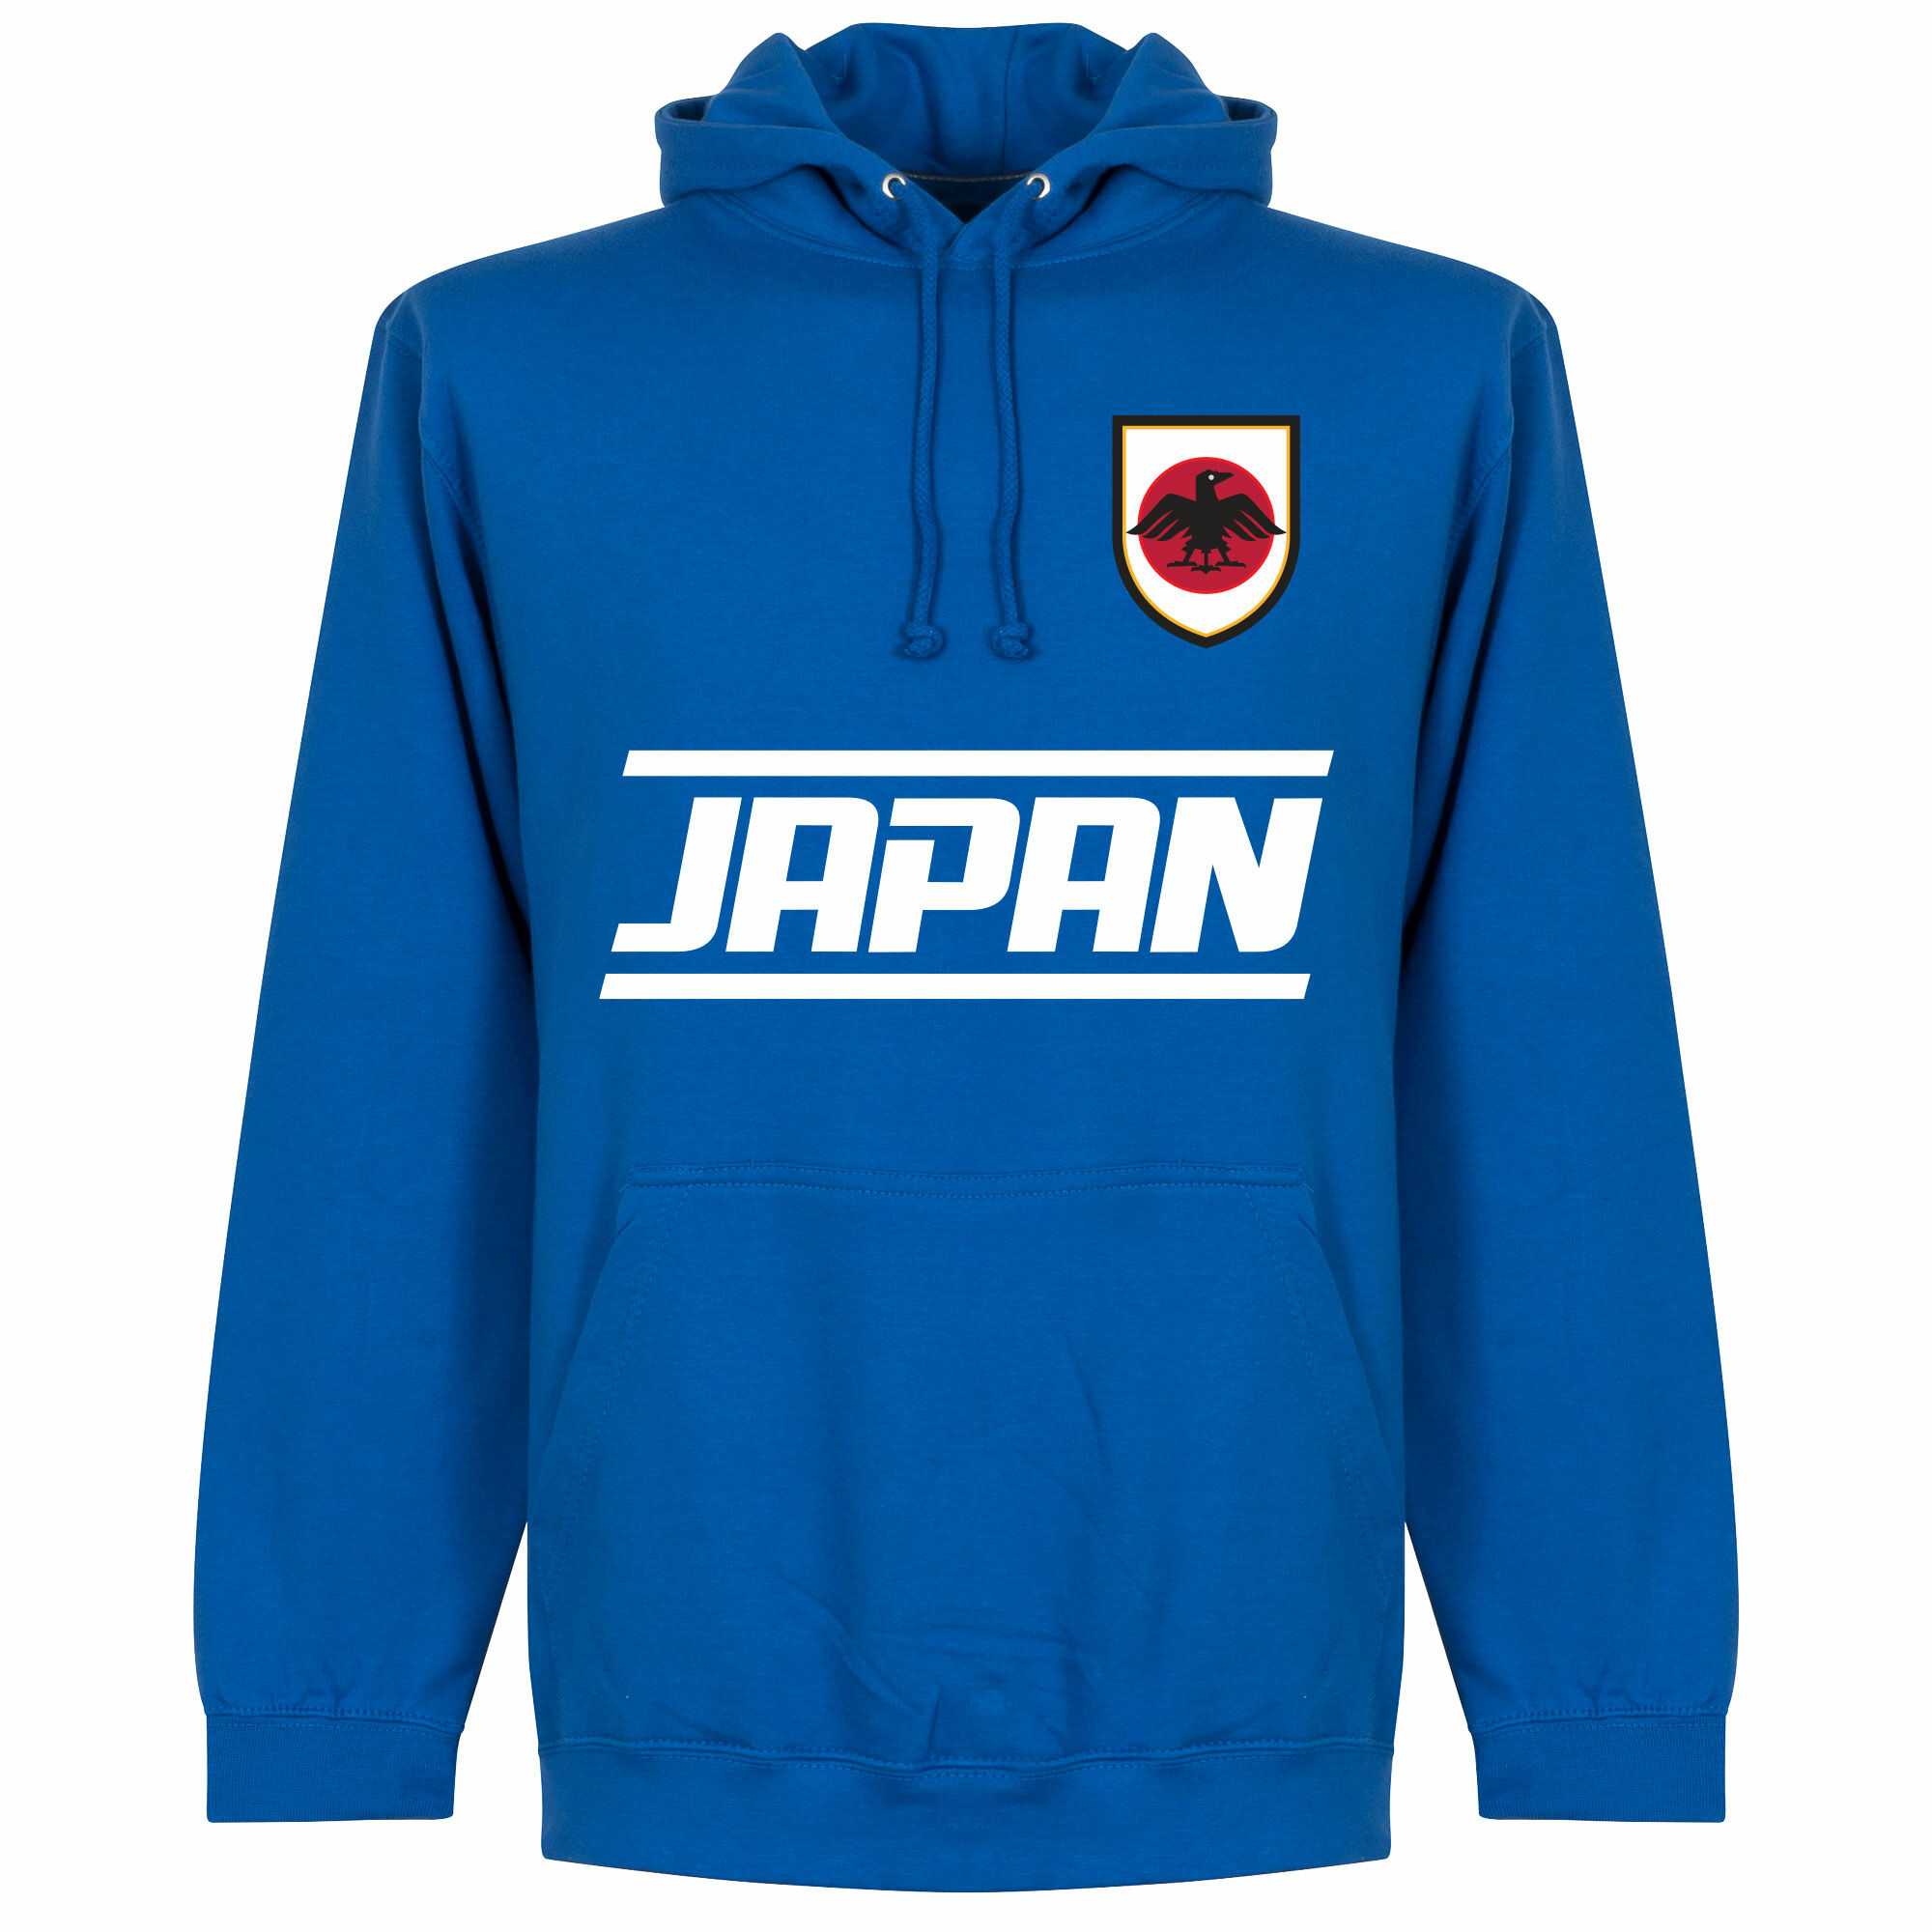 Japonsko - Mikina s kapucí - modrá